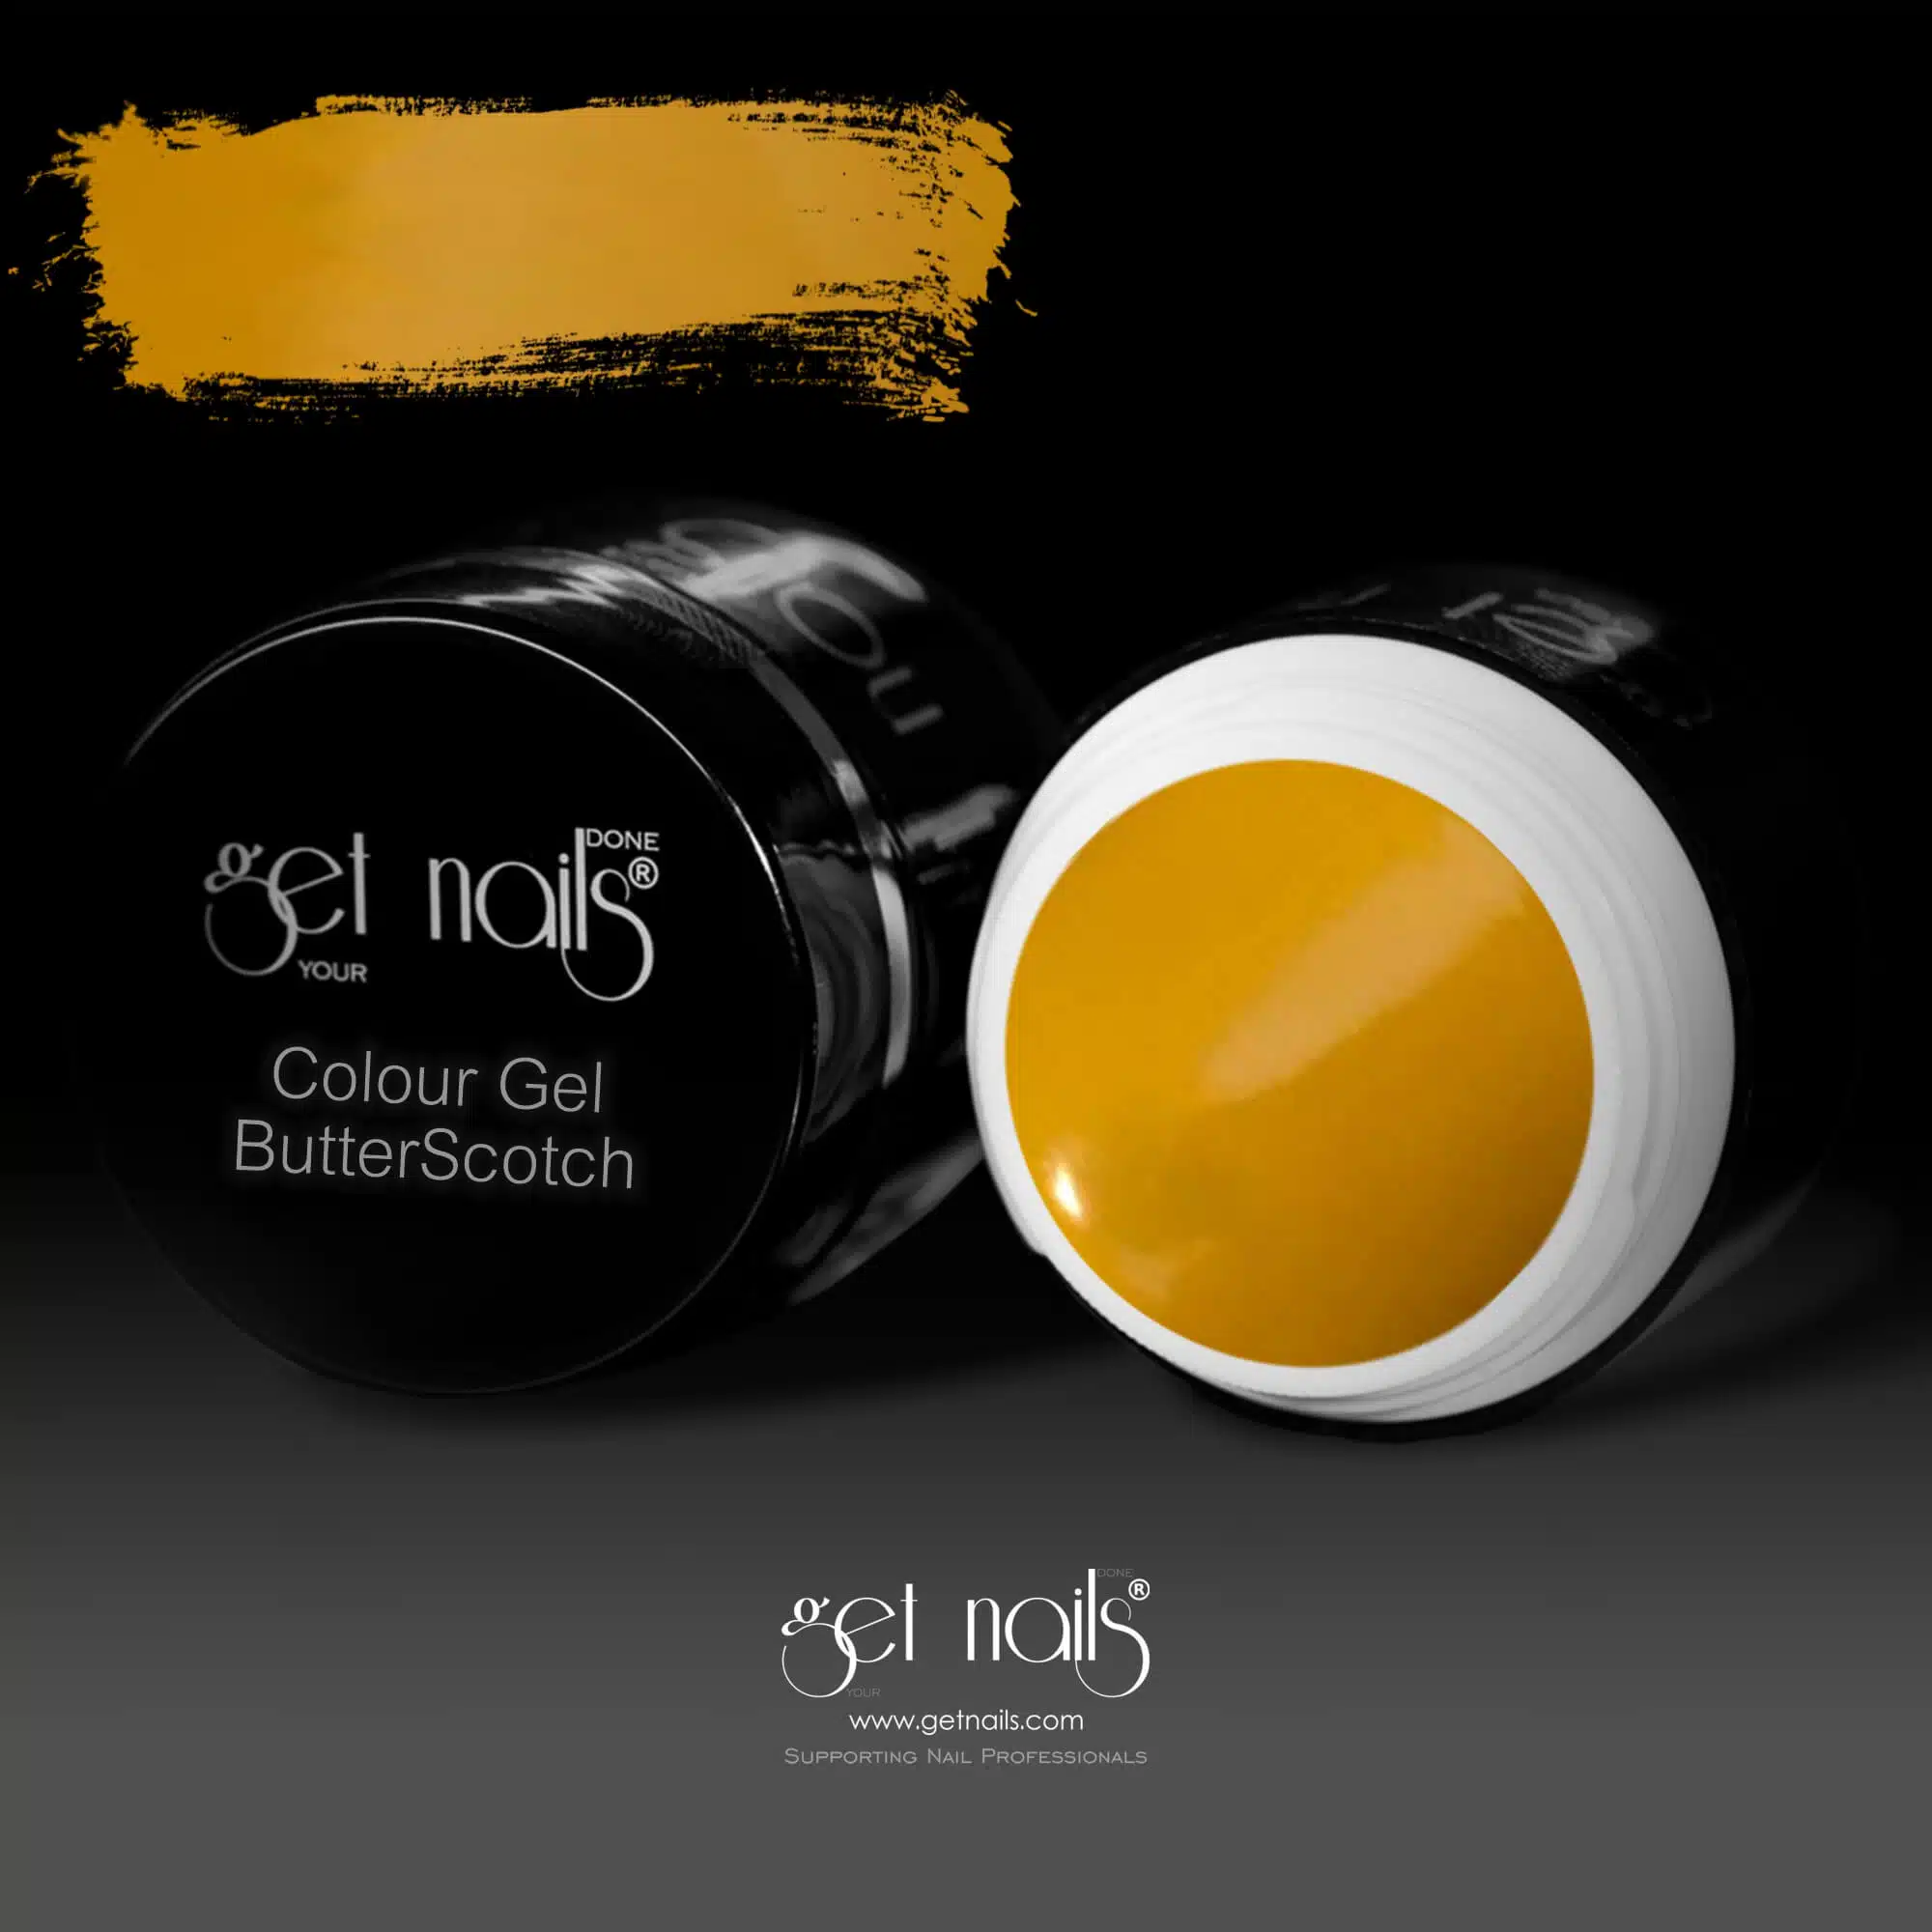 Get Nails Austria - Color Gel ButterScotch 5g